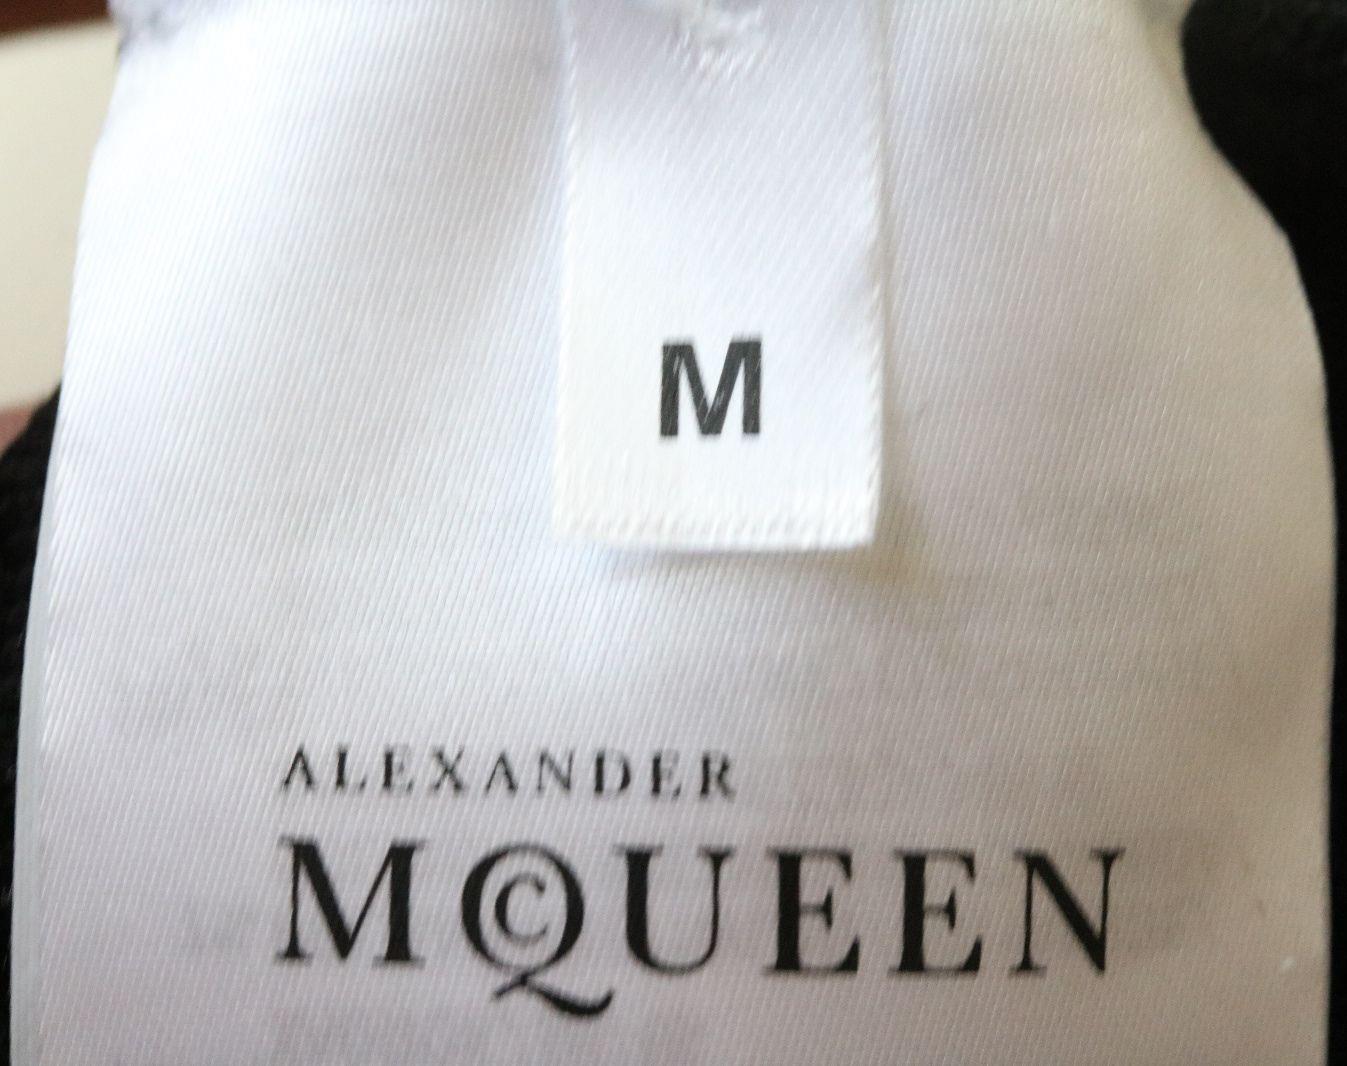 ALEXANDER MCQUEEN OFF THE SHOULDER RUFFLED KNITTED DRESS MEDIUM